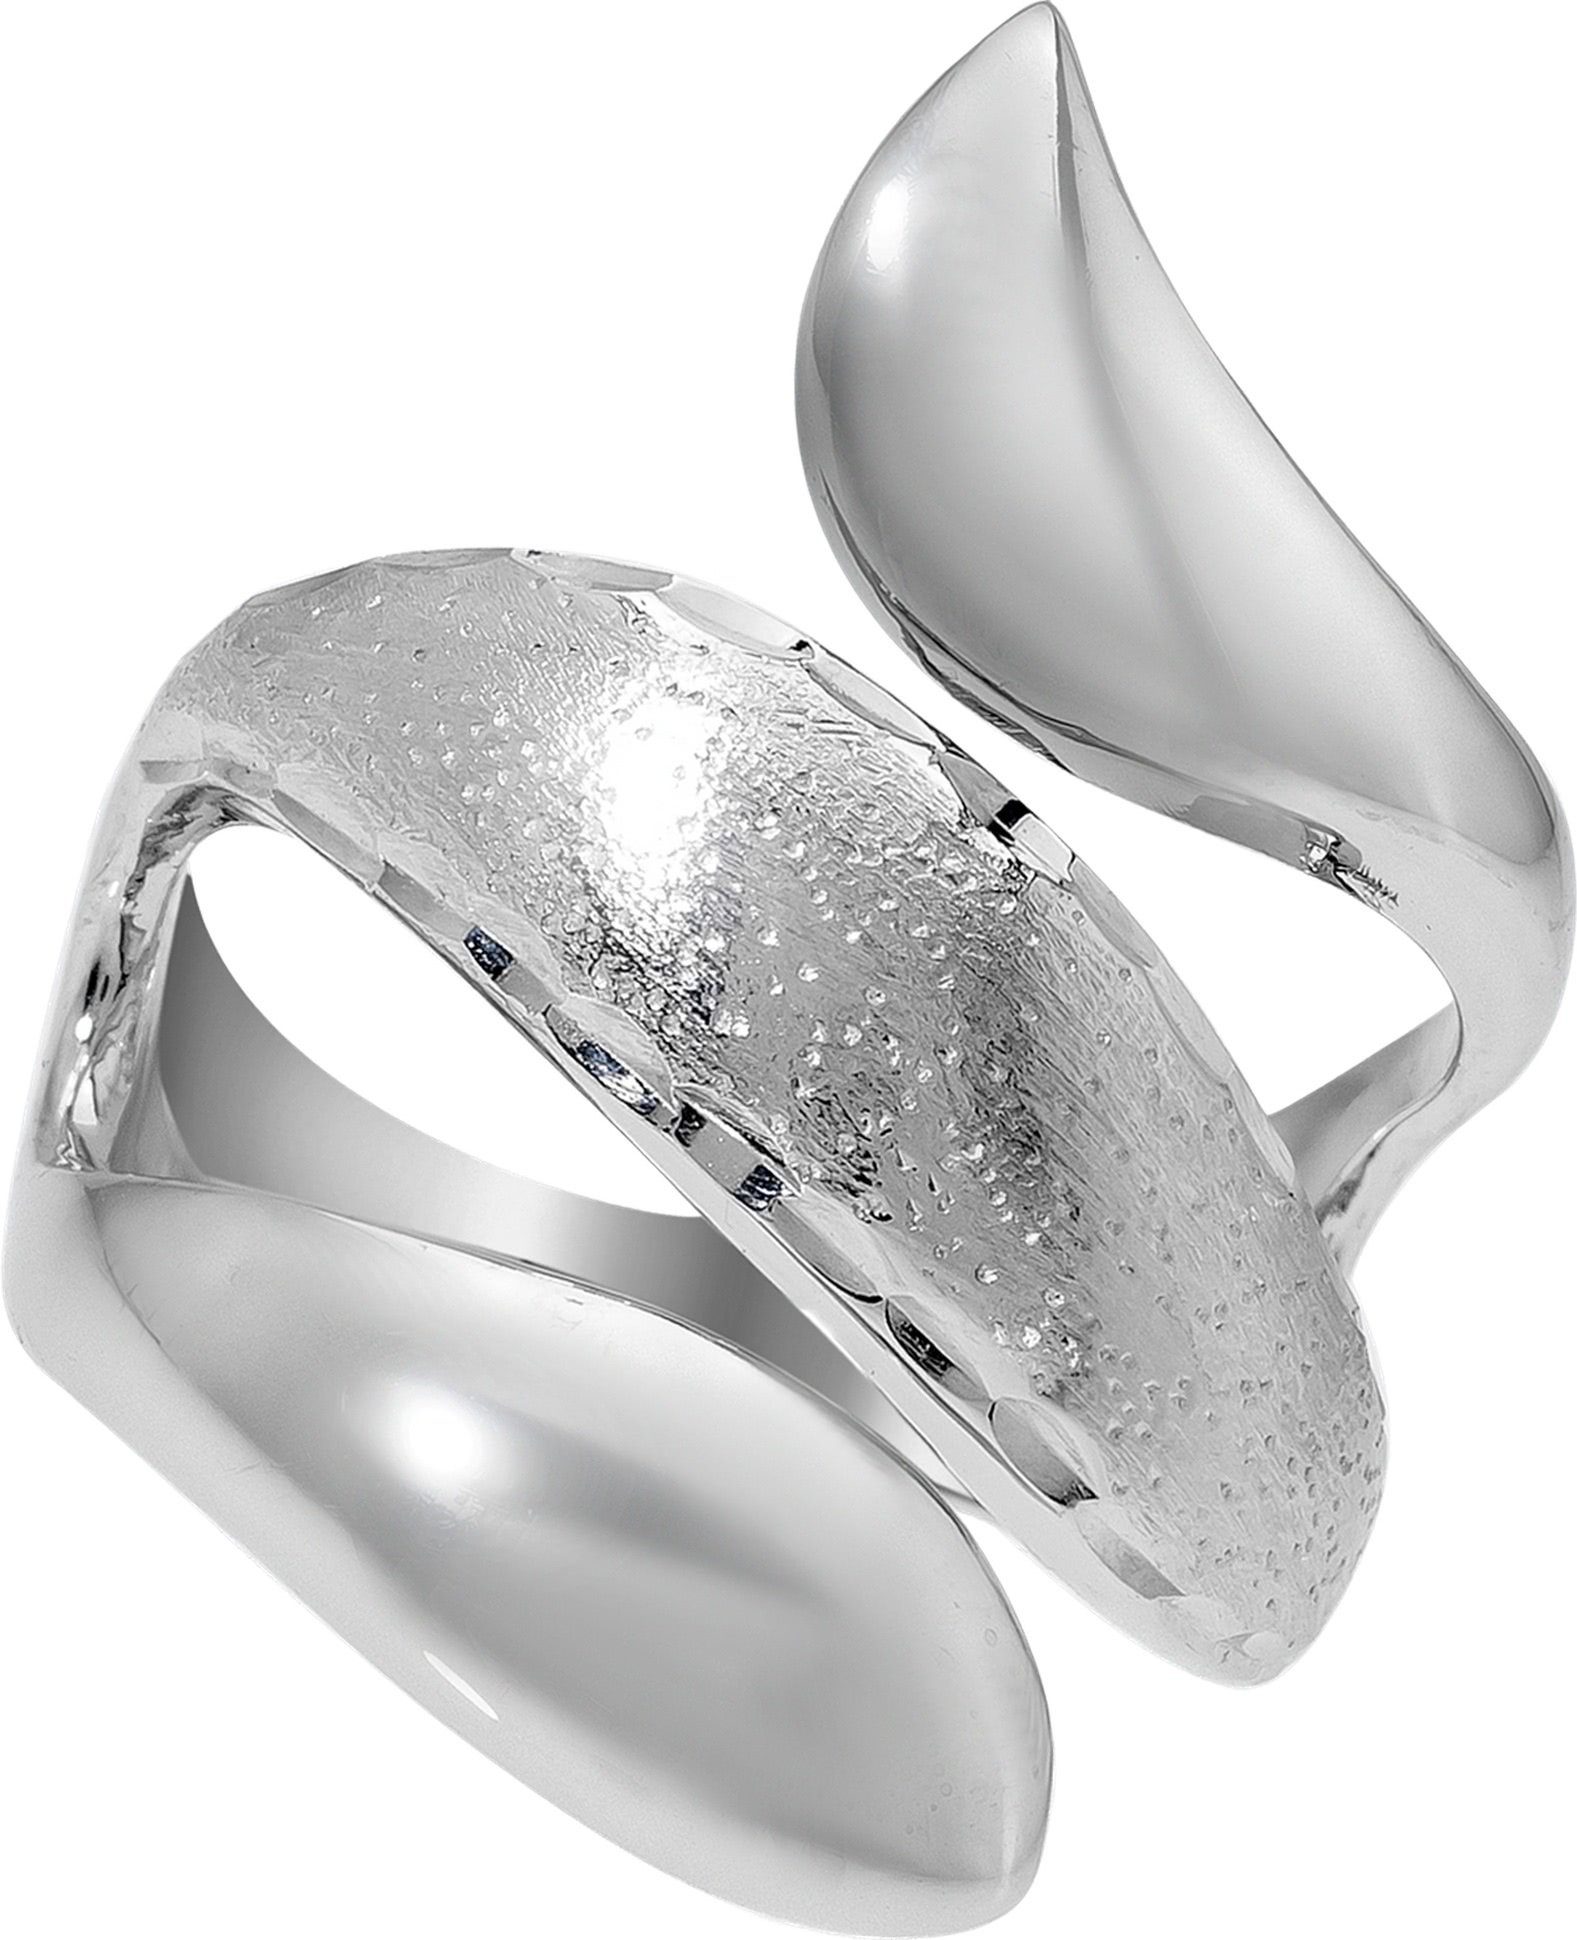 Balia Silberring Balia Ring für Damen mit diamantierter (Fingerring), Fingerring Größe 58 (18,5), 925 Sterling Silber (Schlange) Silber 925